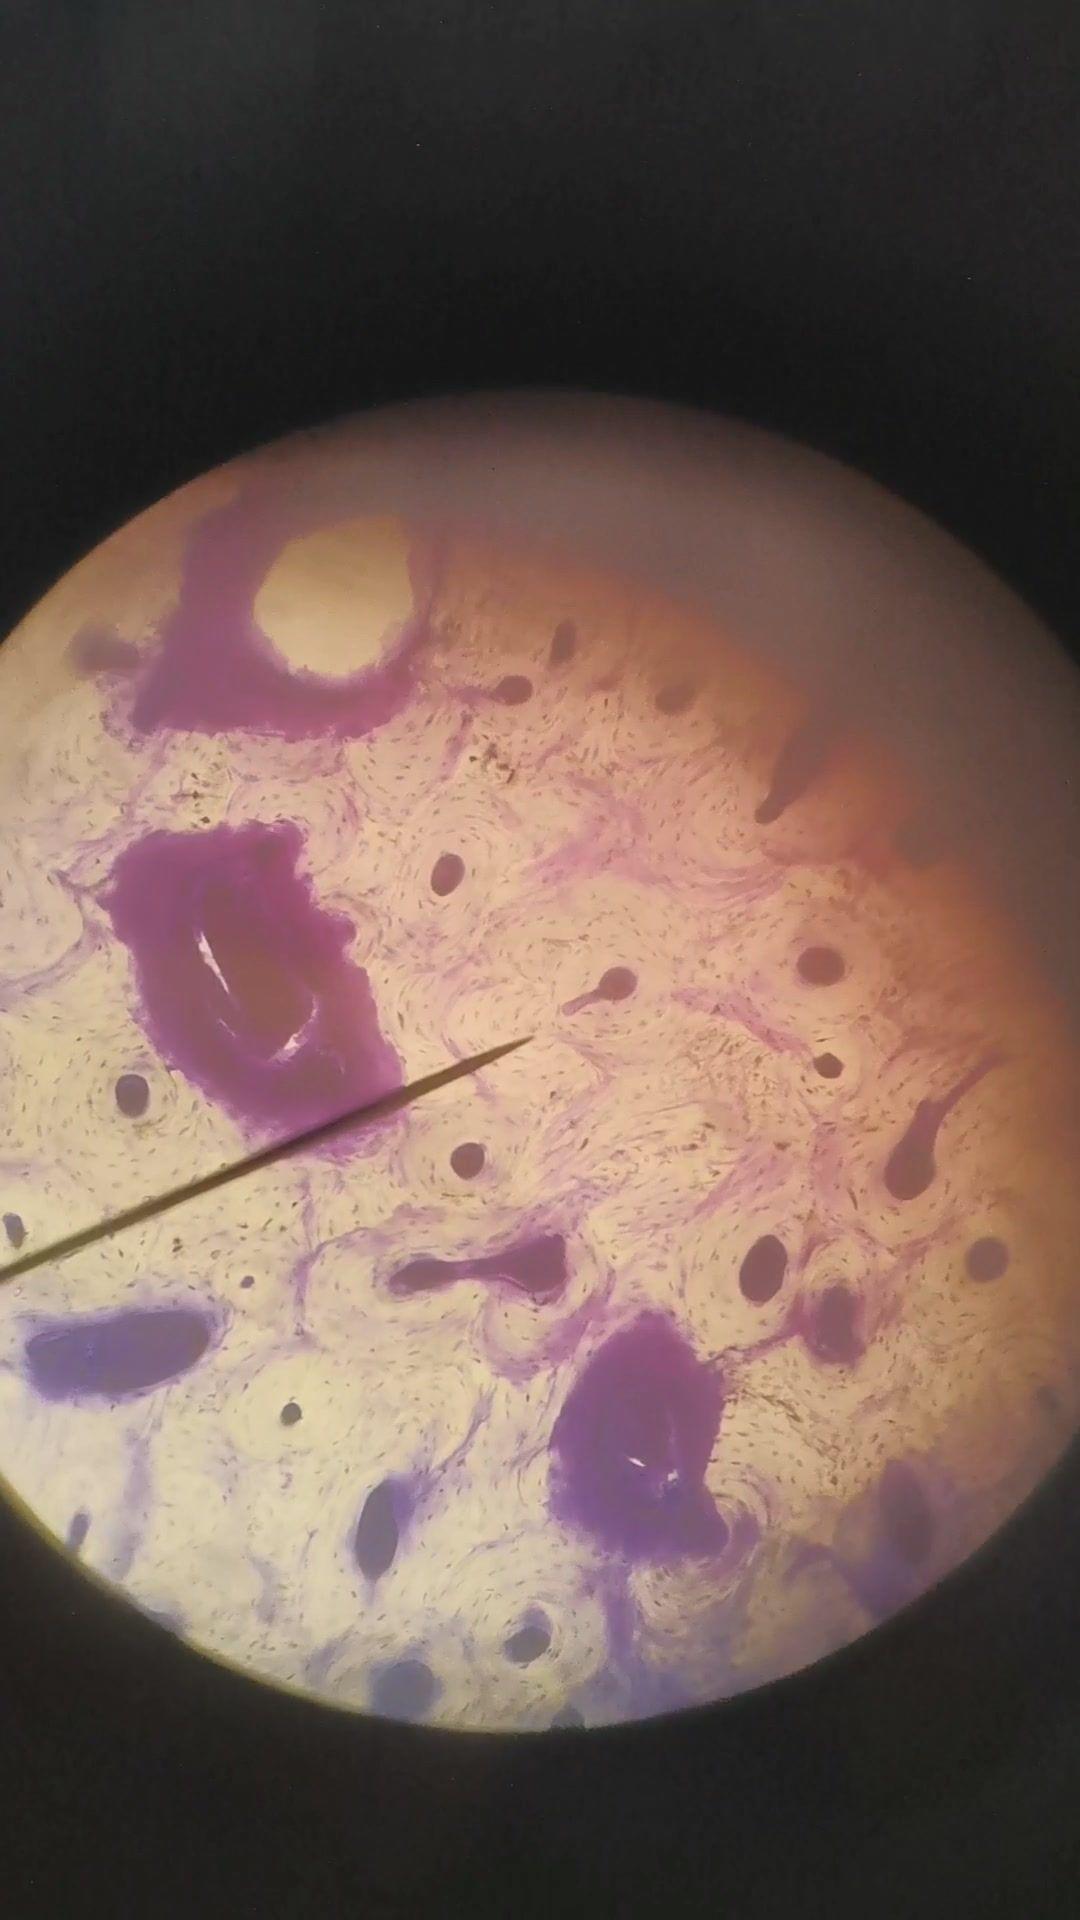 滴虫显微镜下图片